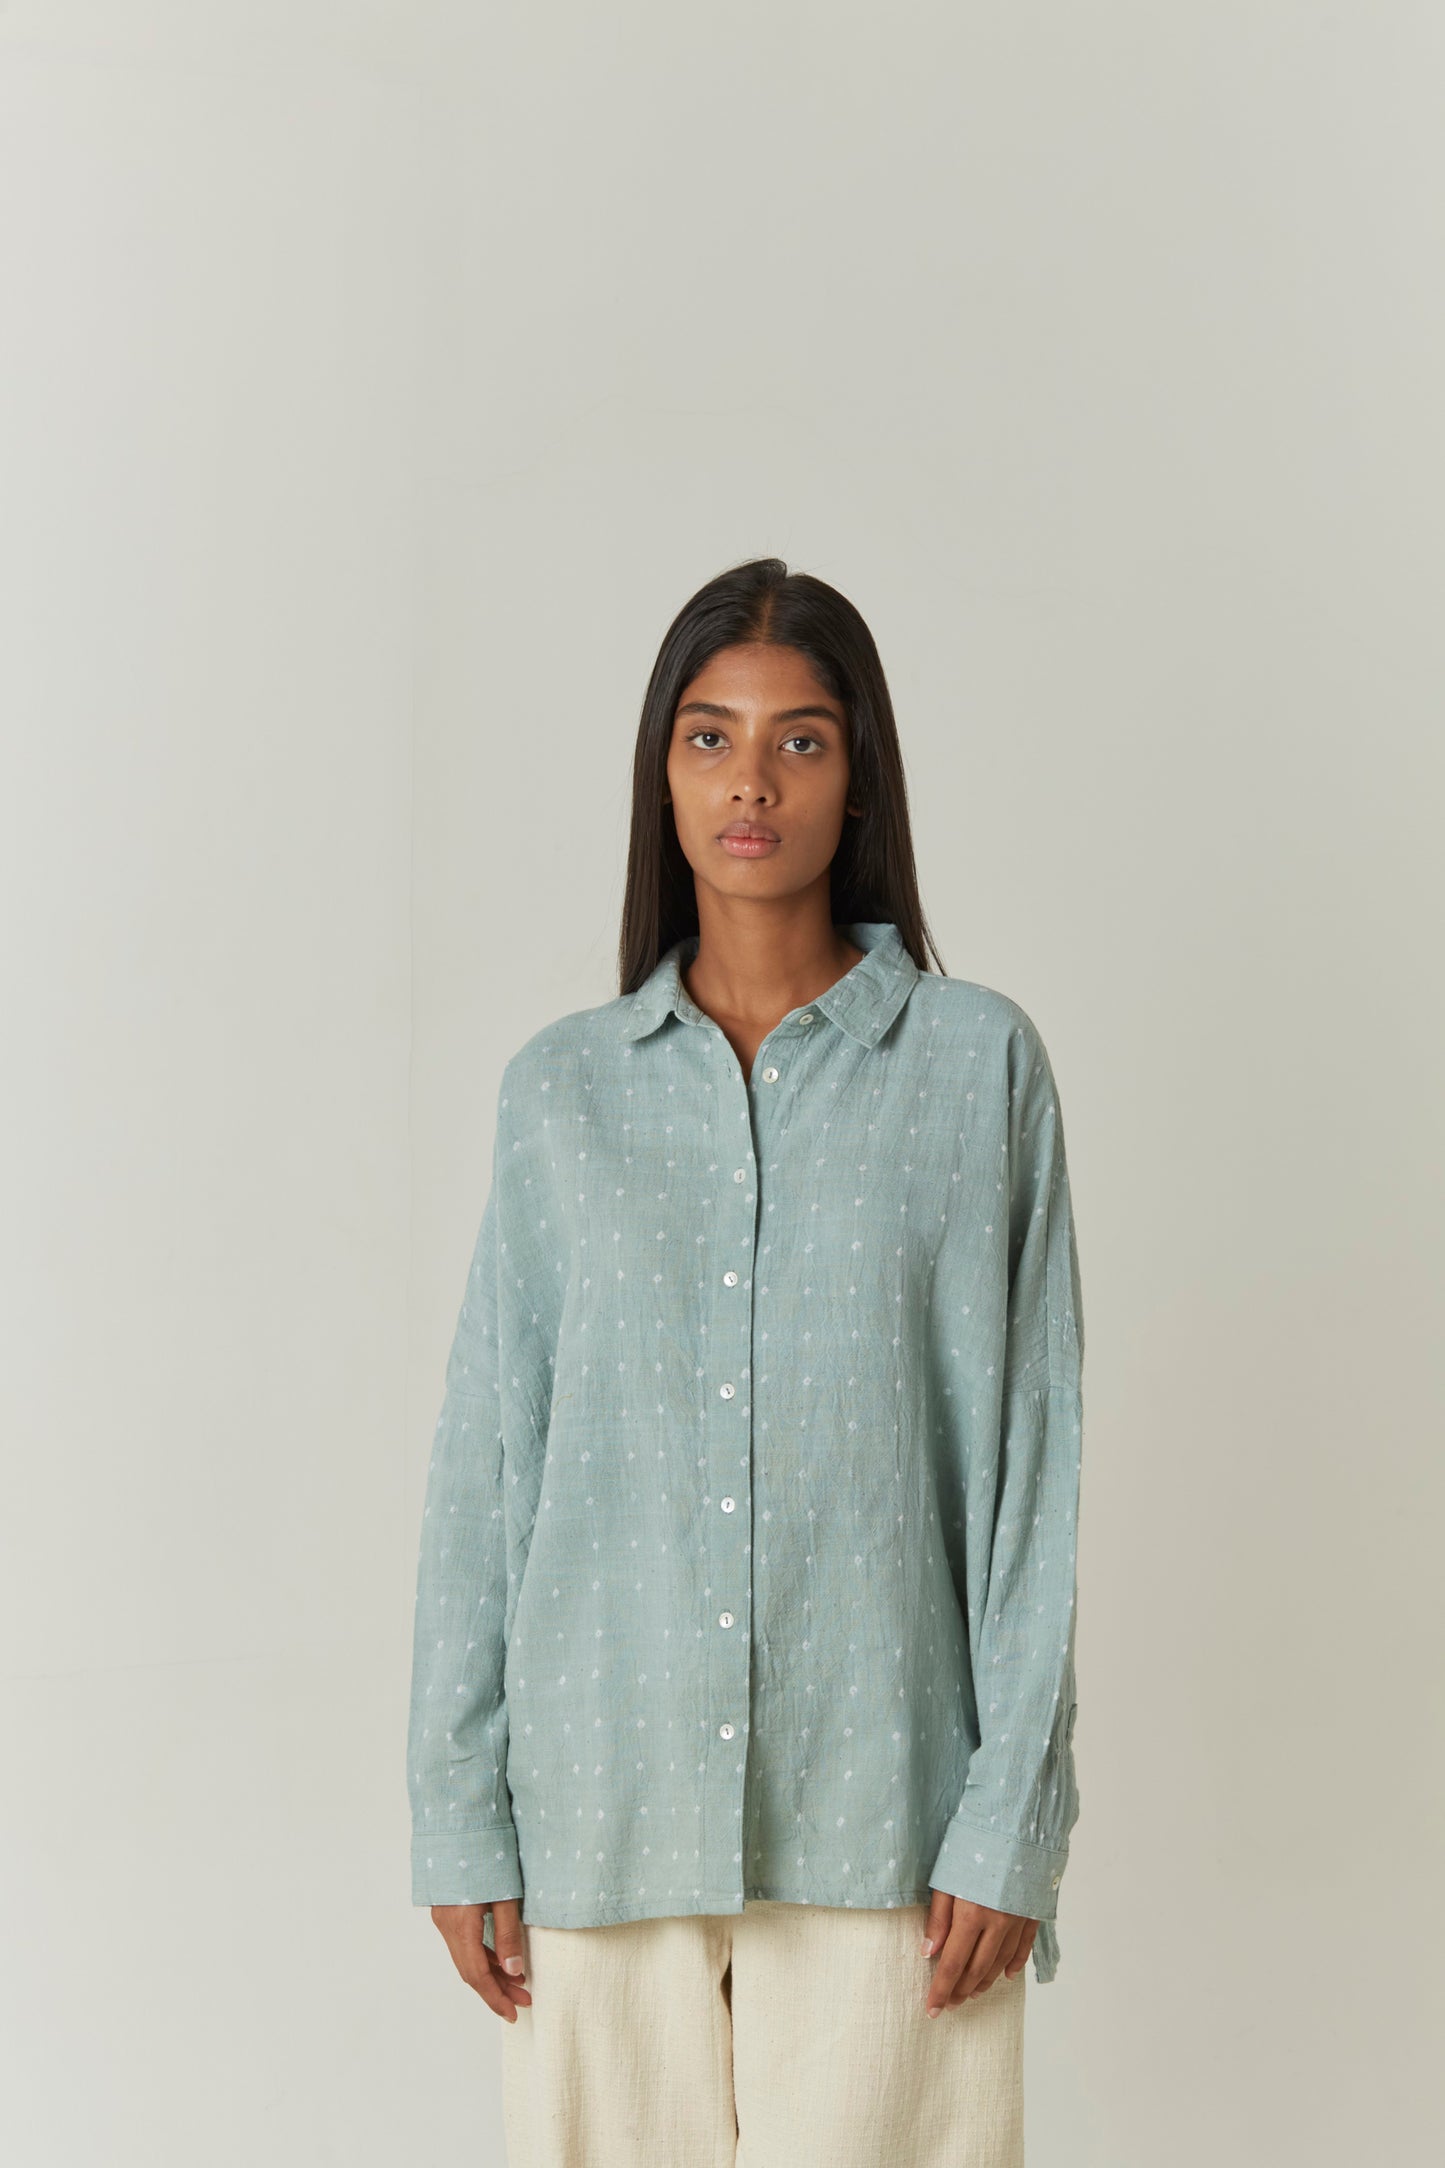 Contemporary Bandhani (tie-dye) Sage green shirt